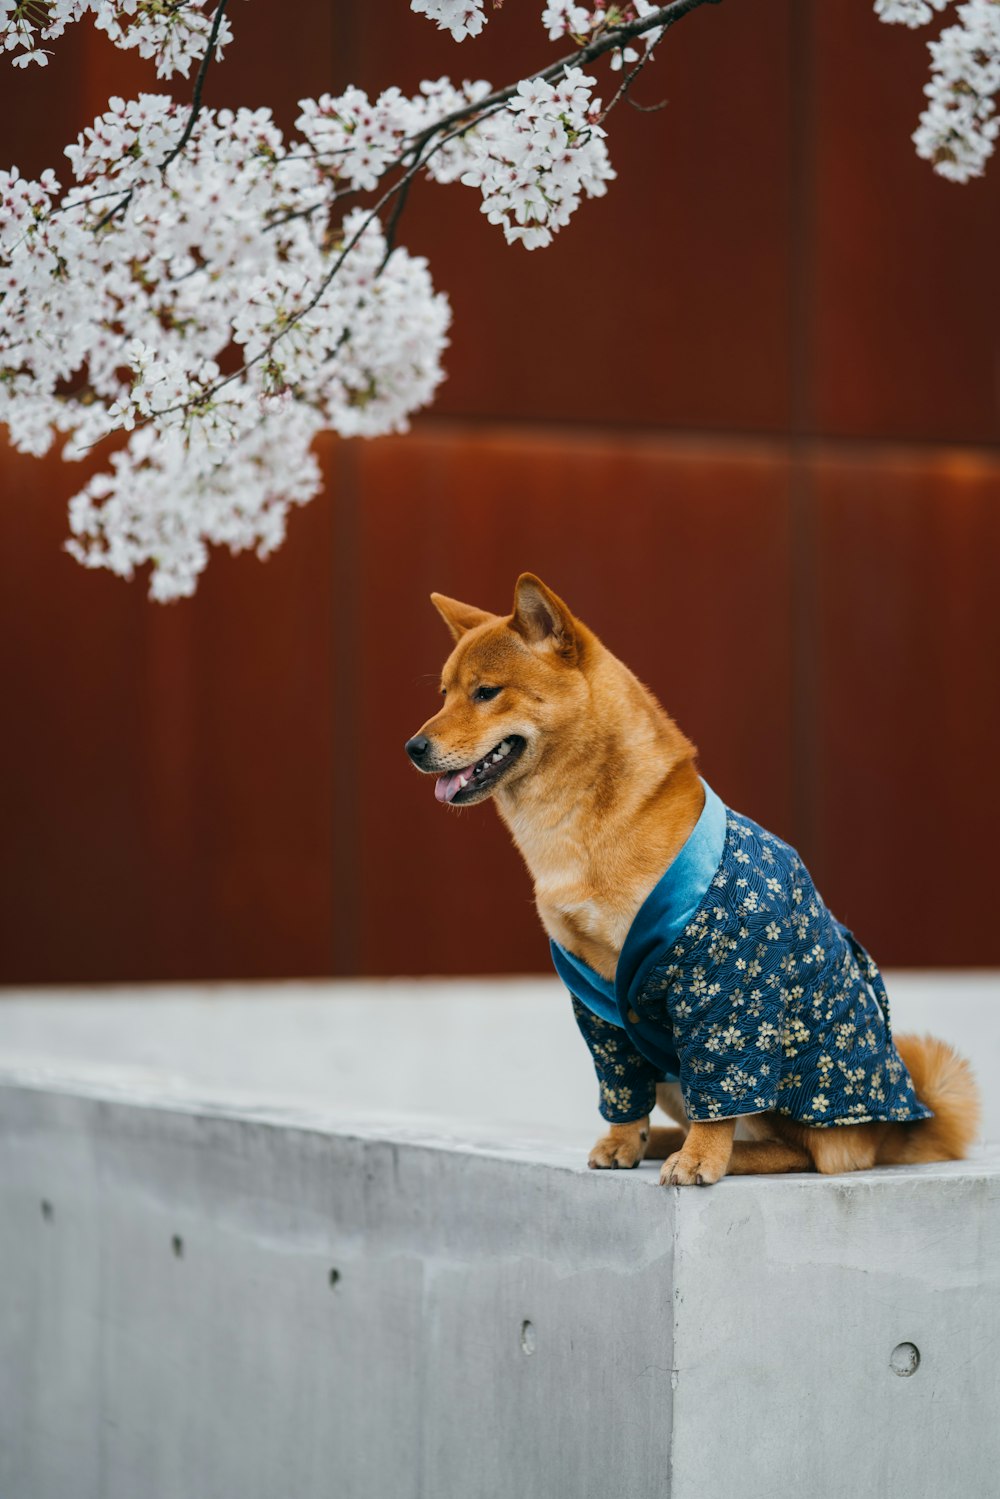 cane a pelo corto marrone che indossa un vestito floreale blu e bianco seduto su una superficie di cemento grigia